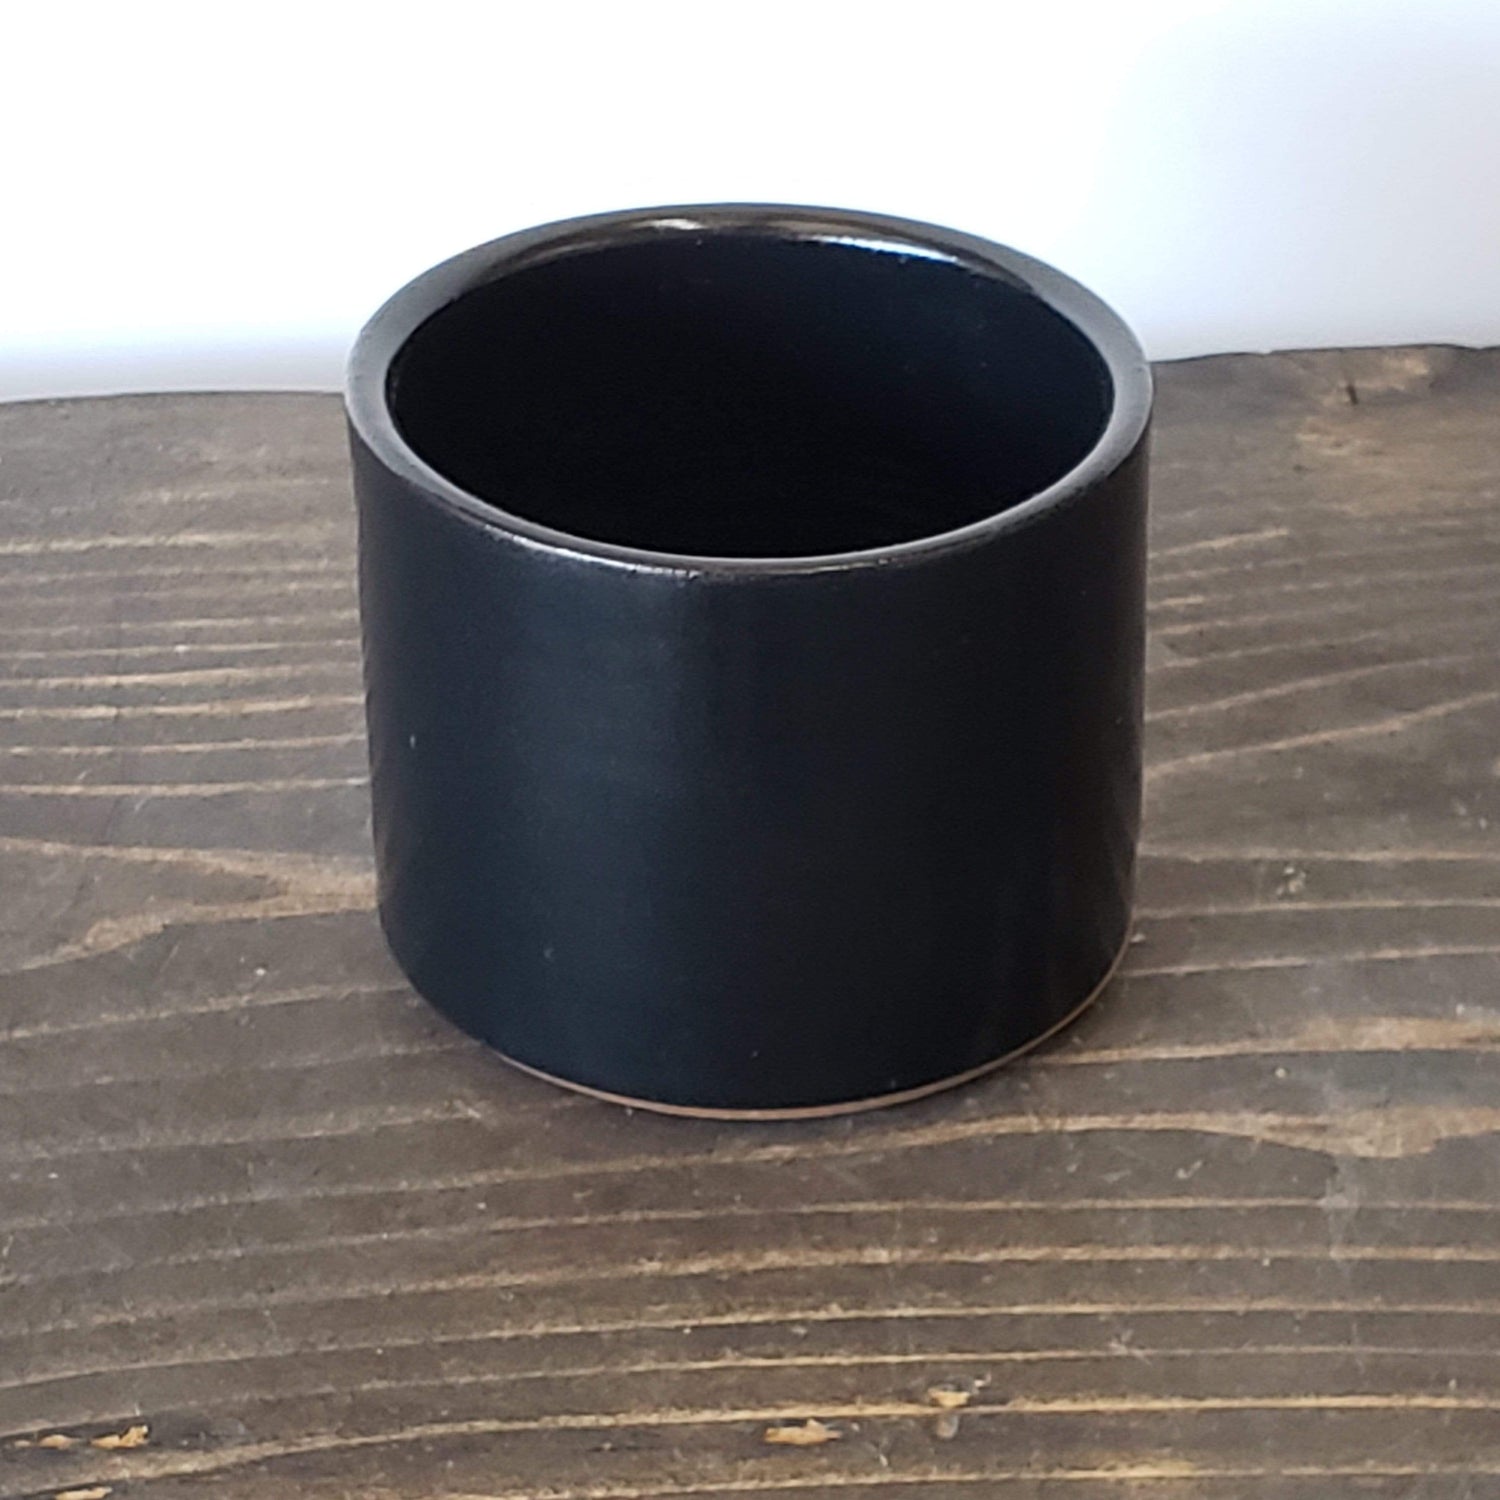 Gravesco Pottery Pot Black / 3" Modern Minimalist Cylinder Planter